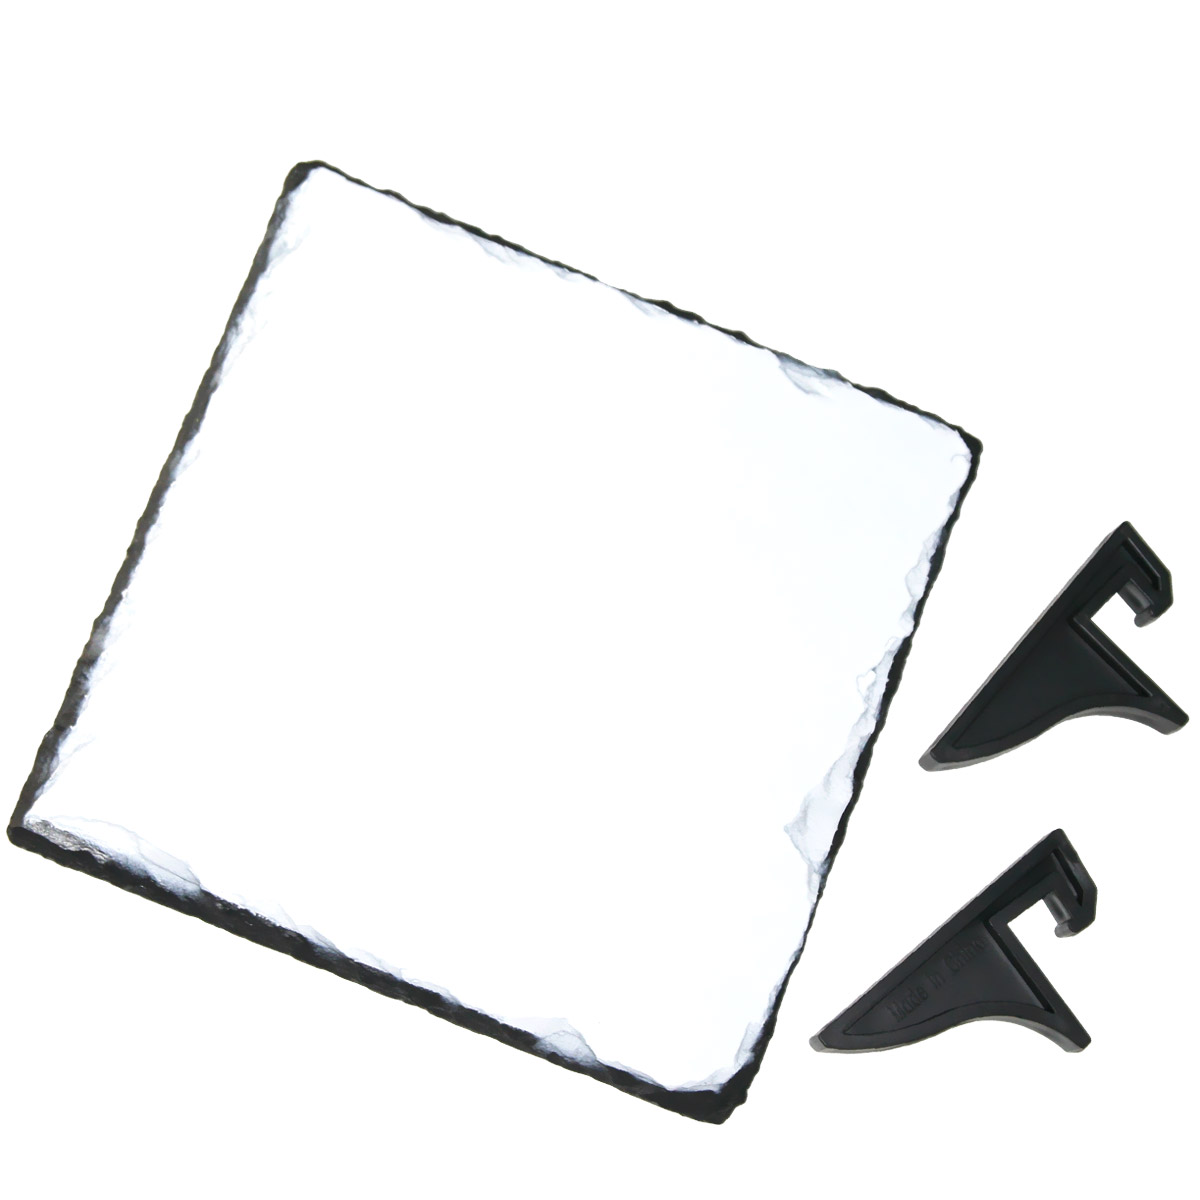 Kwadratowa płyta kamienna do sublimacji - 15 x 15 cm